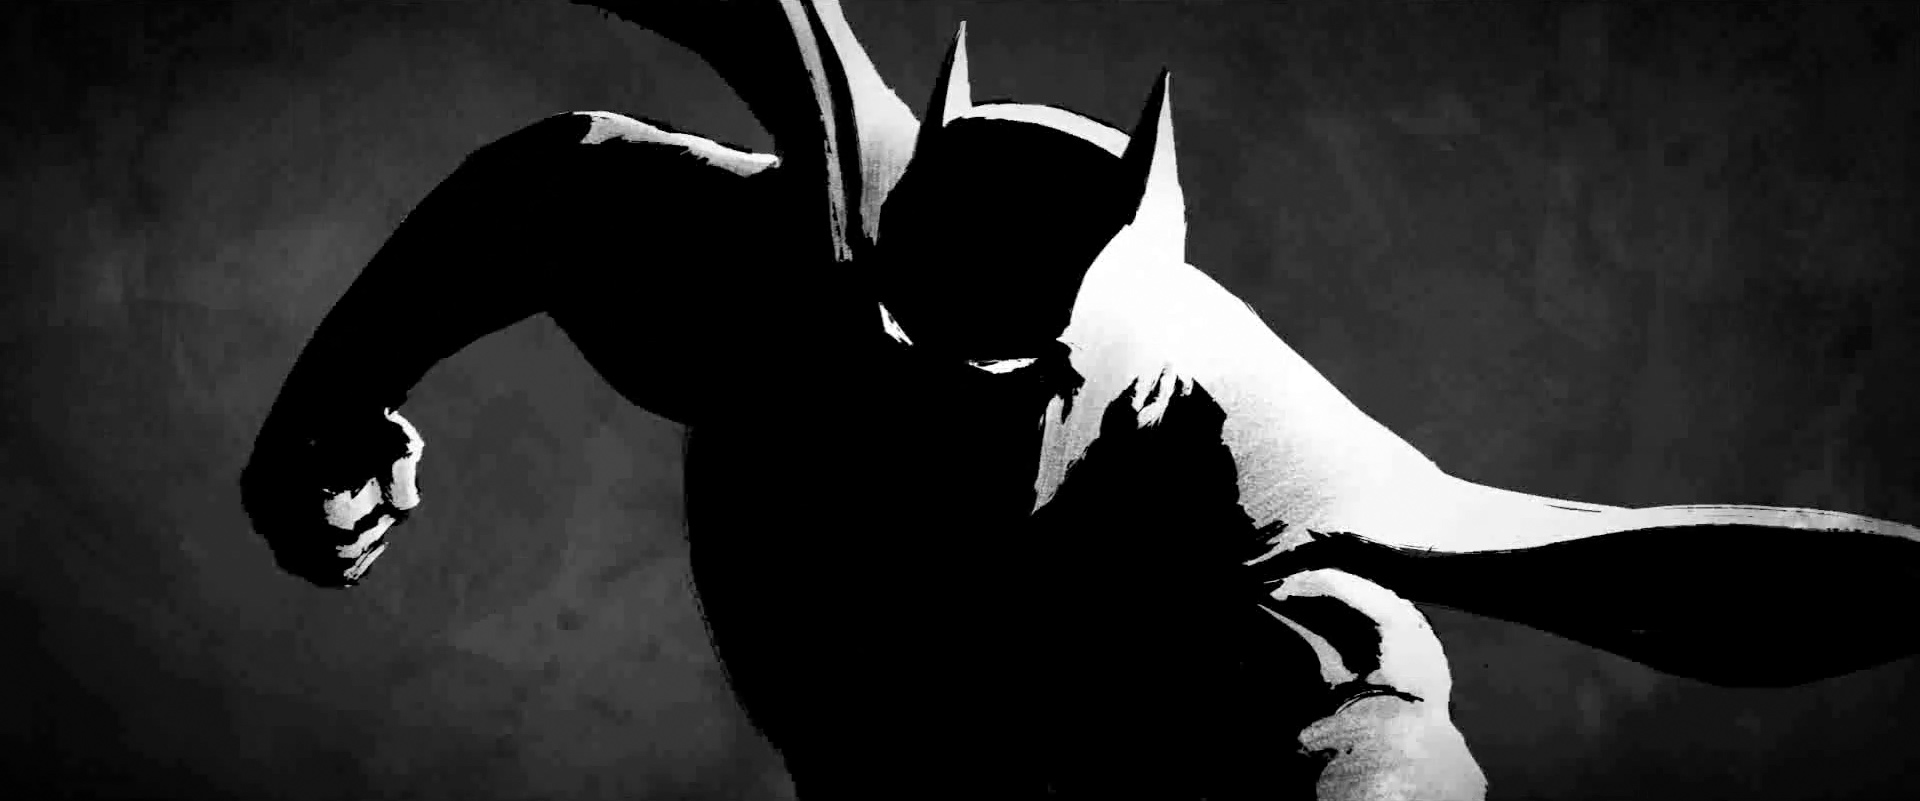 stunning-batman-animatic-short-a-gotham-fairytale-40.jpg